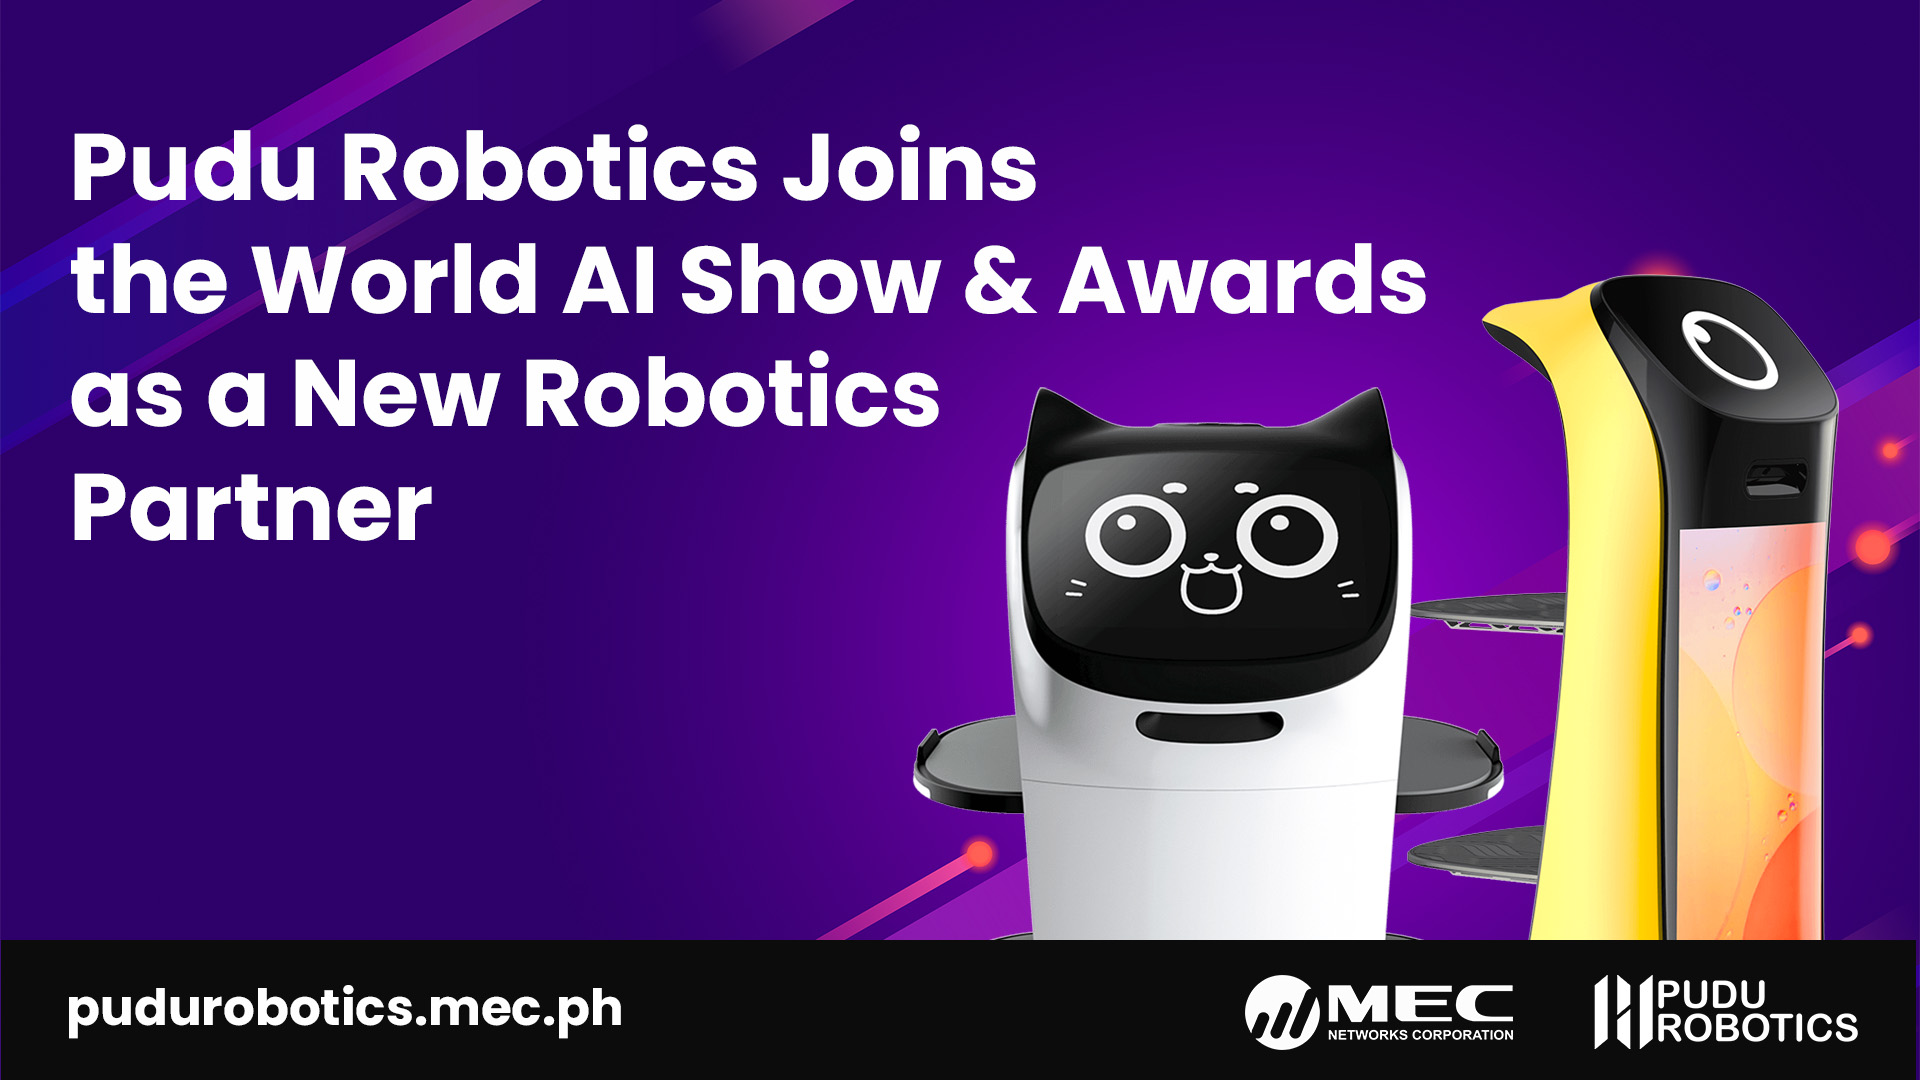 Pudu Robotics Joins the World AI Show & Awards as a New Robotics Partner